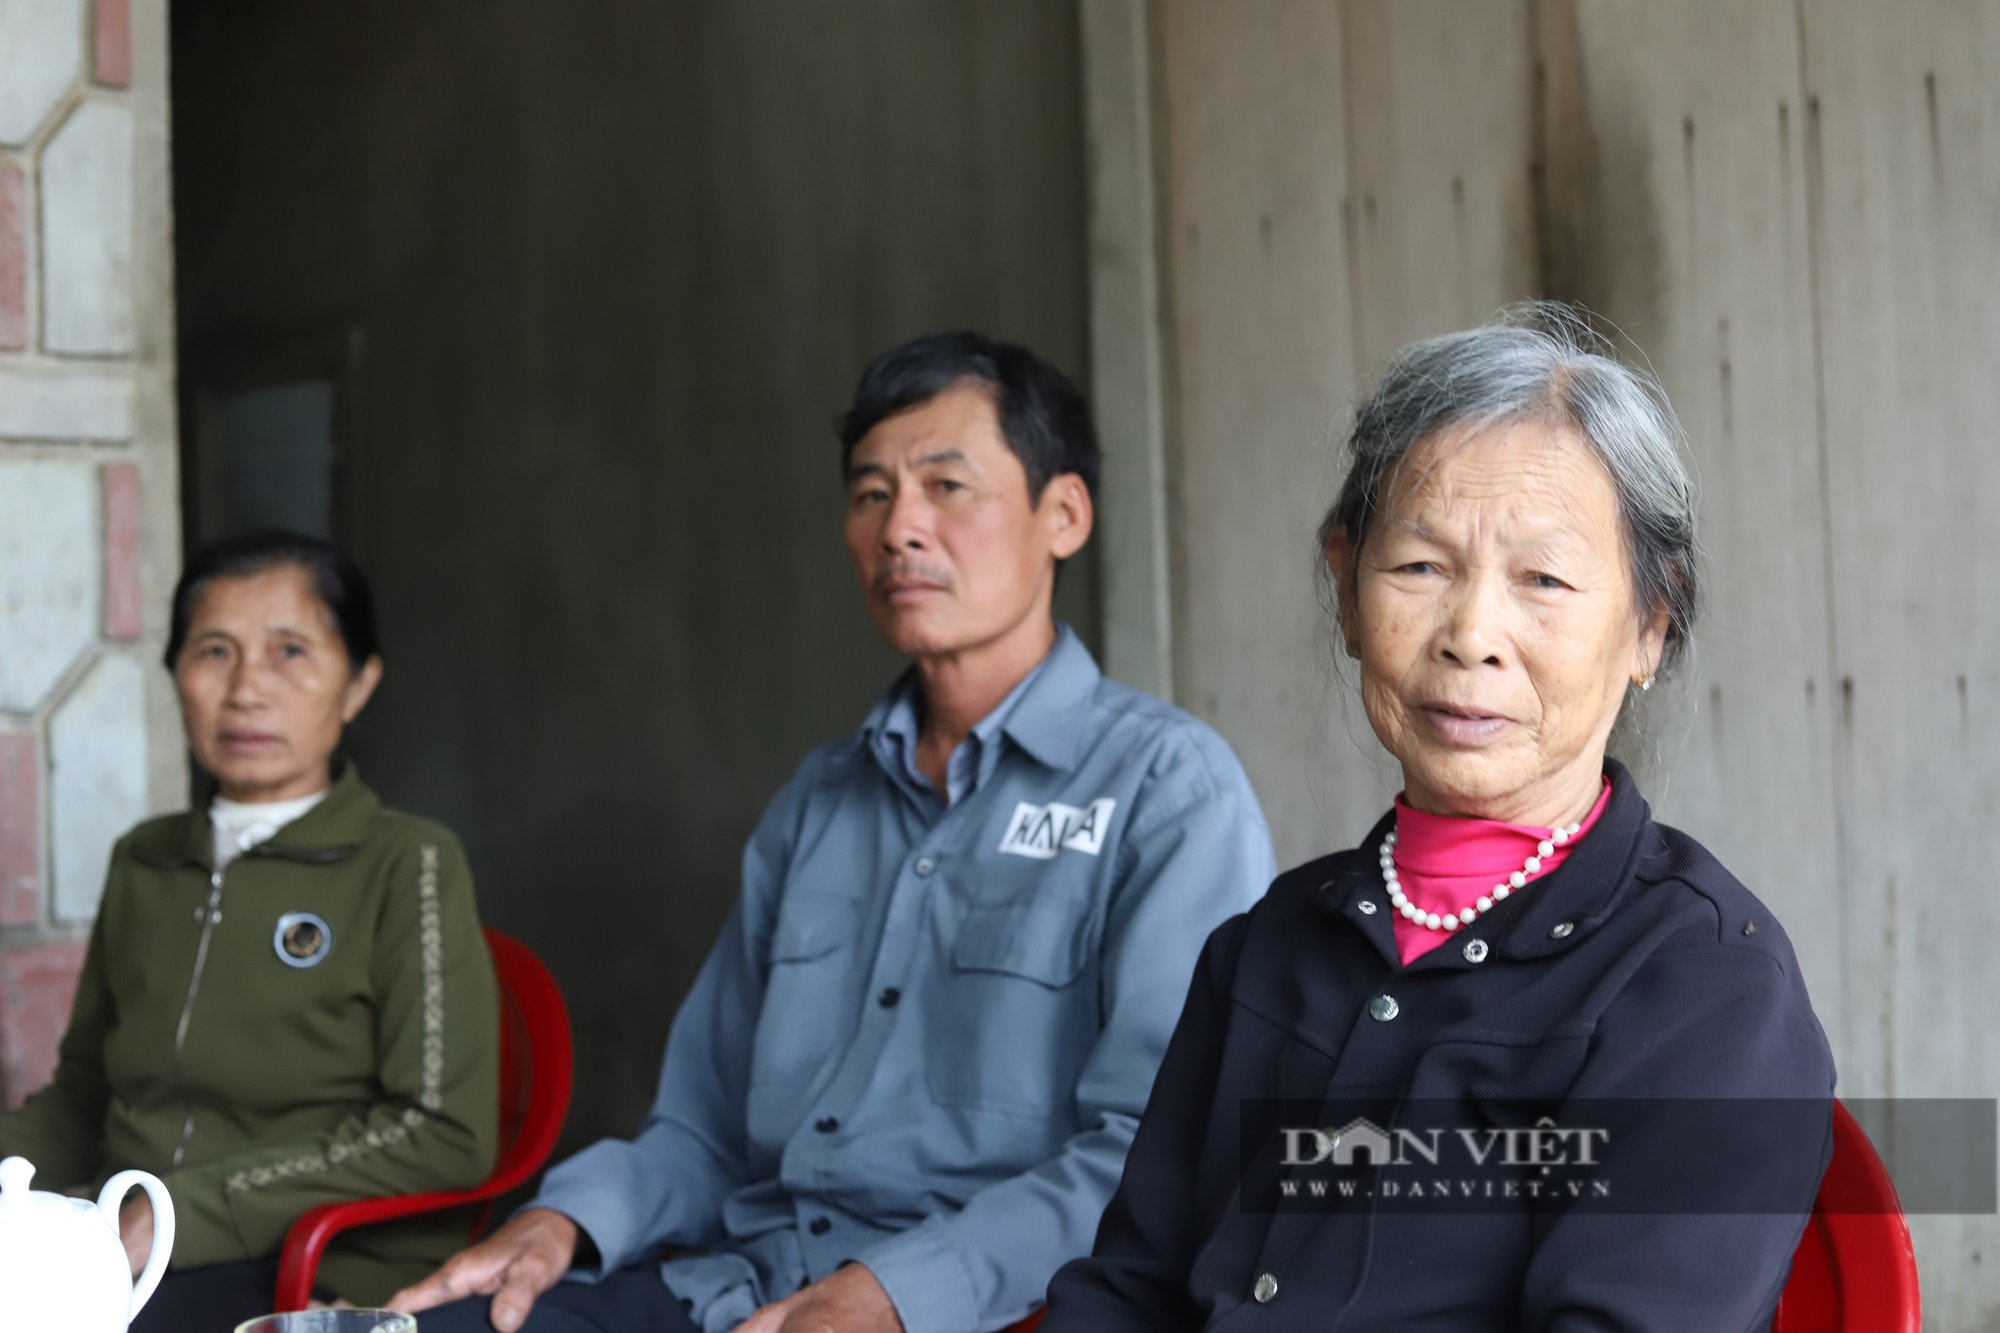 Thân nhân liệt sỹ Cao Văn Tuất hy vọng tìm được mộ của ông thông qua cuốn nhật ký 56 năm thất lạc - Ảnh 1.